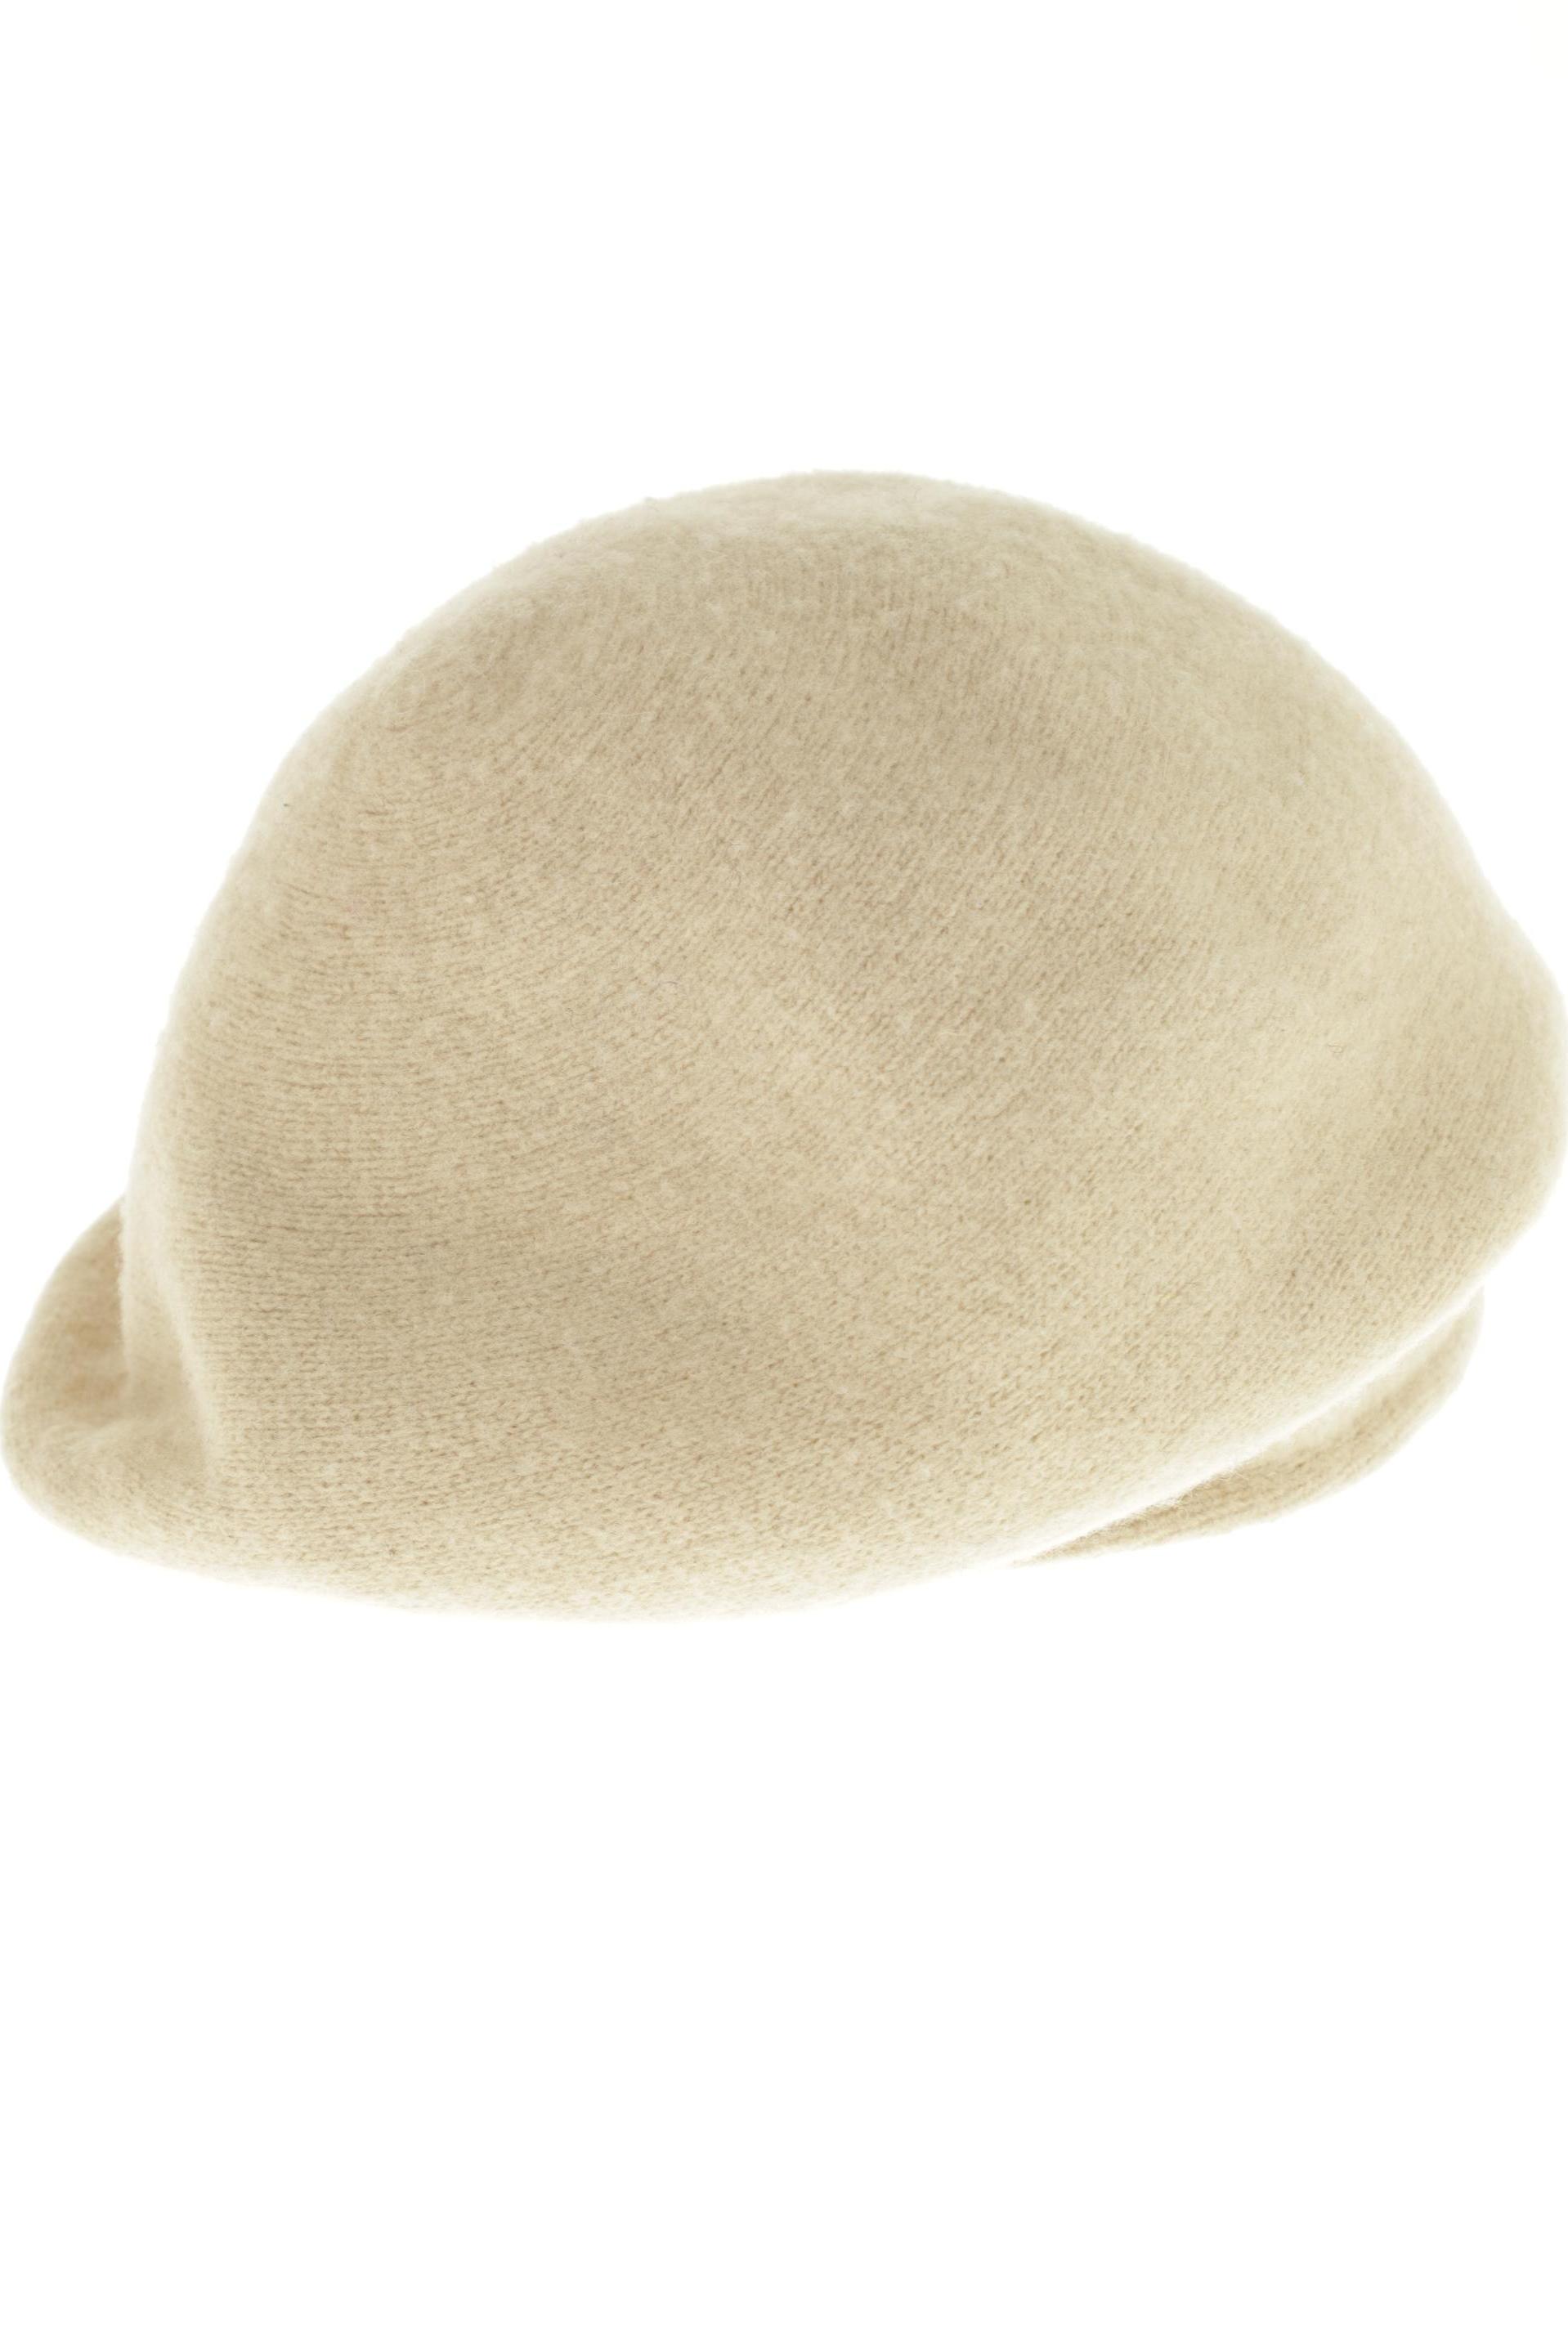 Roeckl Damen Hut/Mütze, beige, Gr. uni von Roeckl